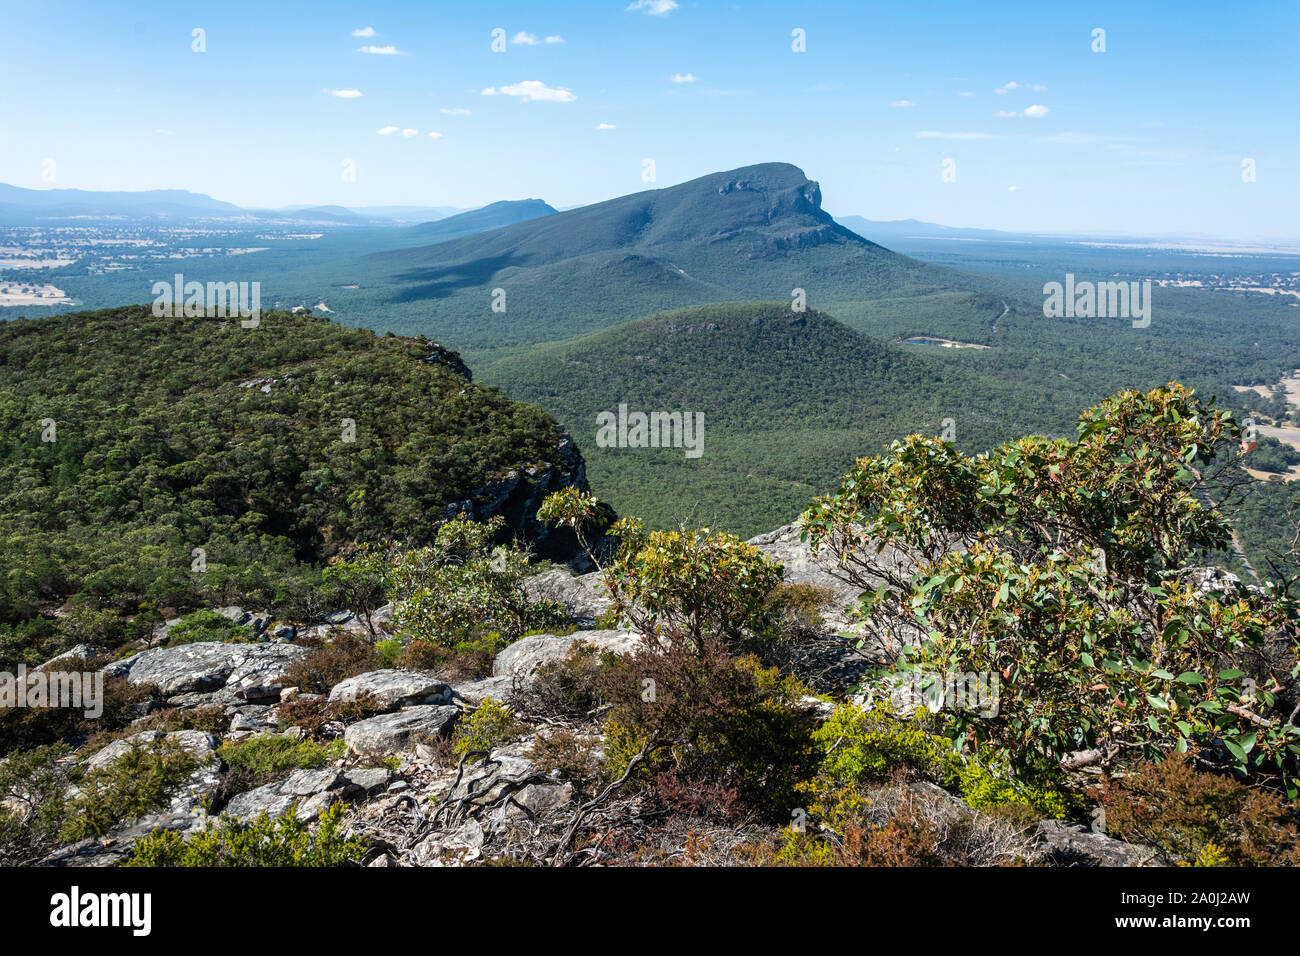 View of Mt Abrupt in the Grampians region of Victoria, Australia. Stock Photo